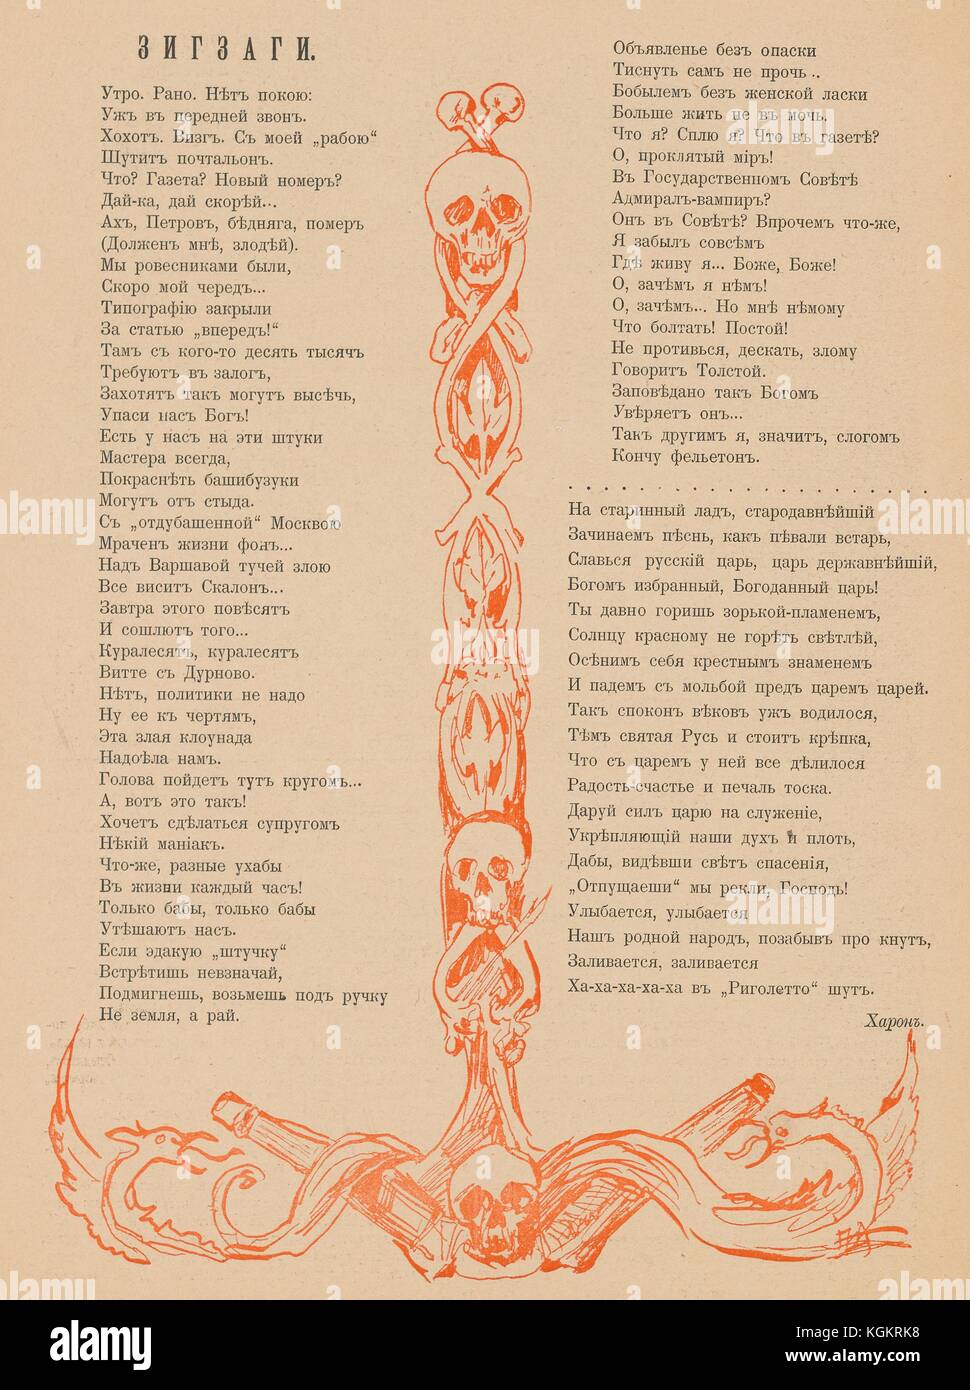 Design aus der Russischen satirische Zeitschrift ovod (Bremse) von einem Anker-förmiges Stück Holz mit Totenköpfen dekoriert, mit mythologischen Vögeln rund um unten auf jeder Seite, 1906 gewickelt. Stockfoto